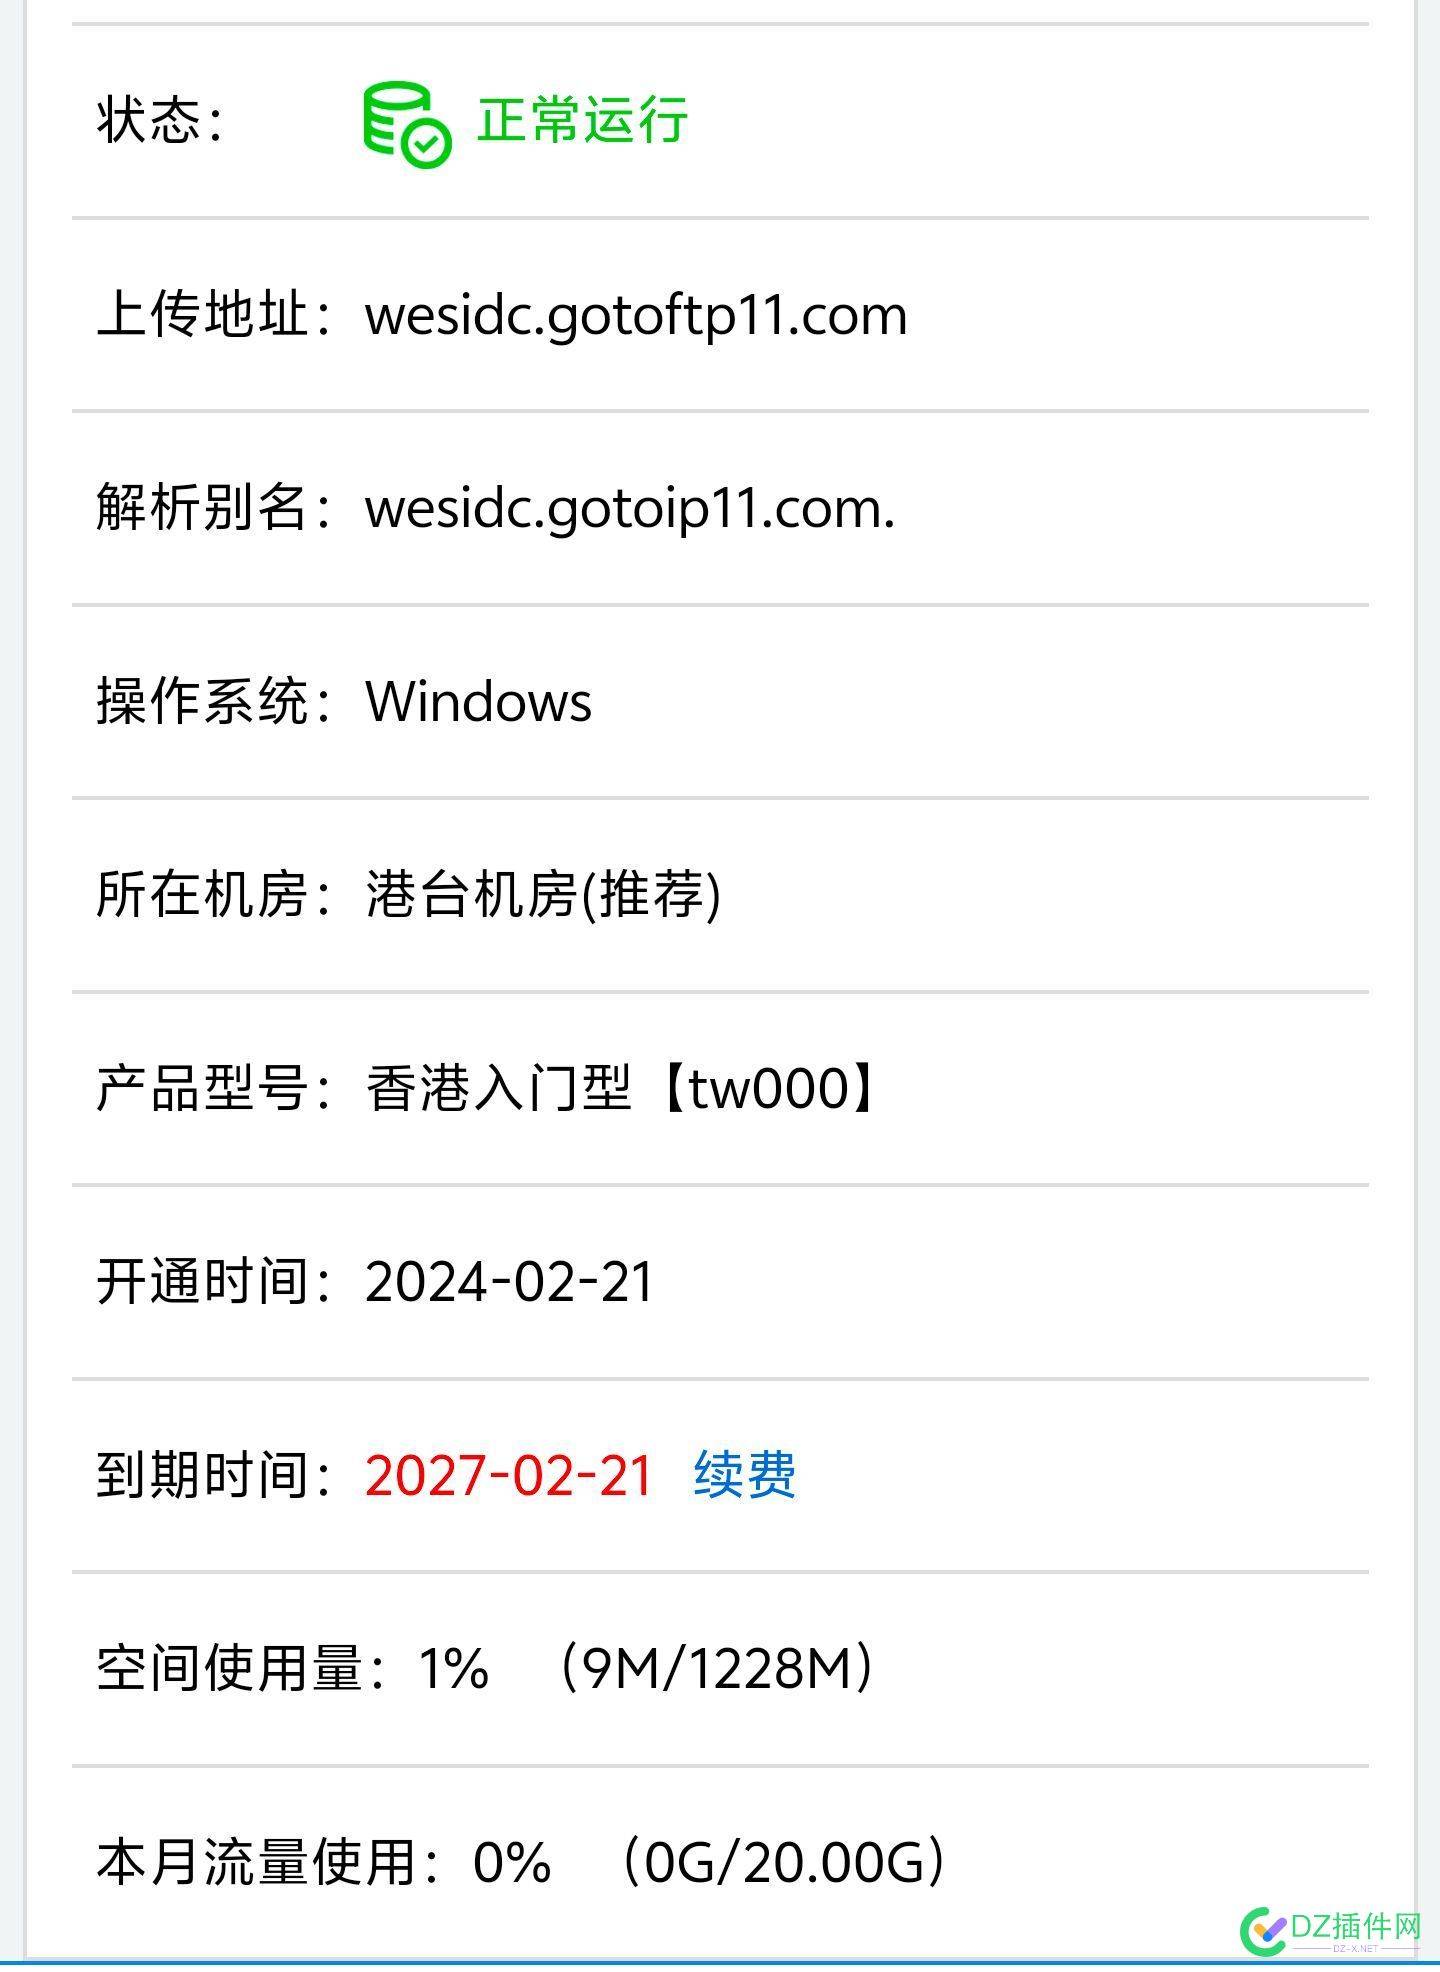 出一个西部数码香港虚拟主机三年288元 一个,西部,西部数码,数码,香港